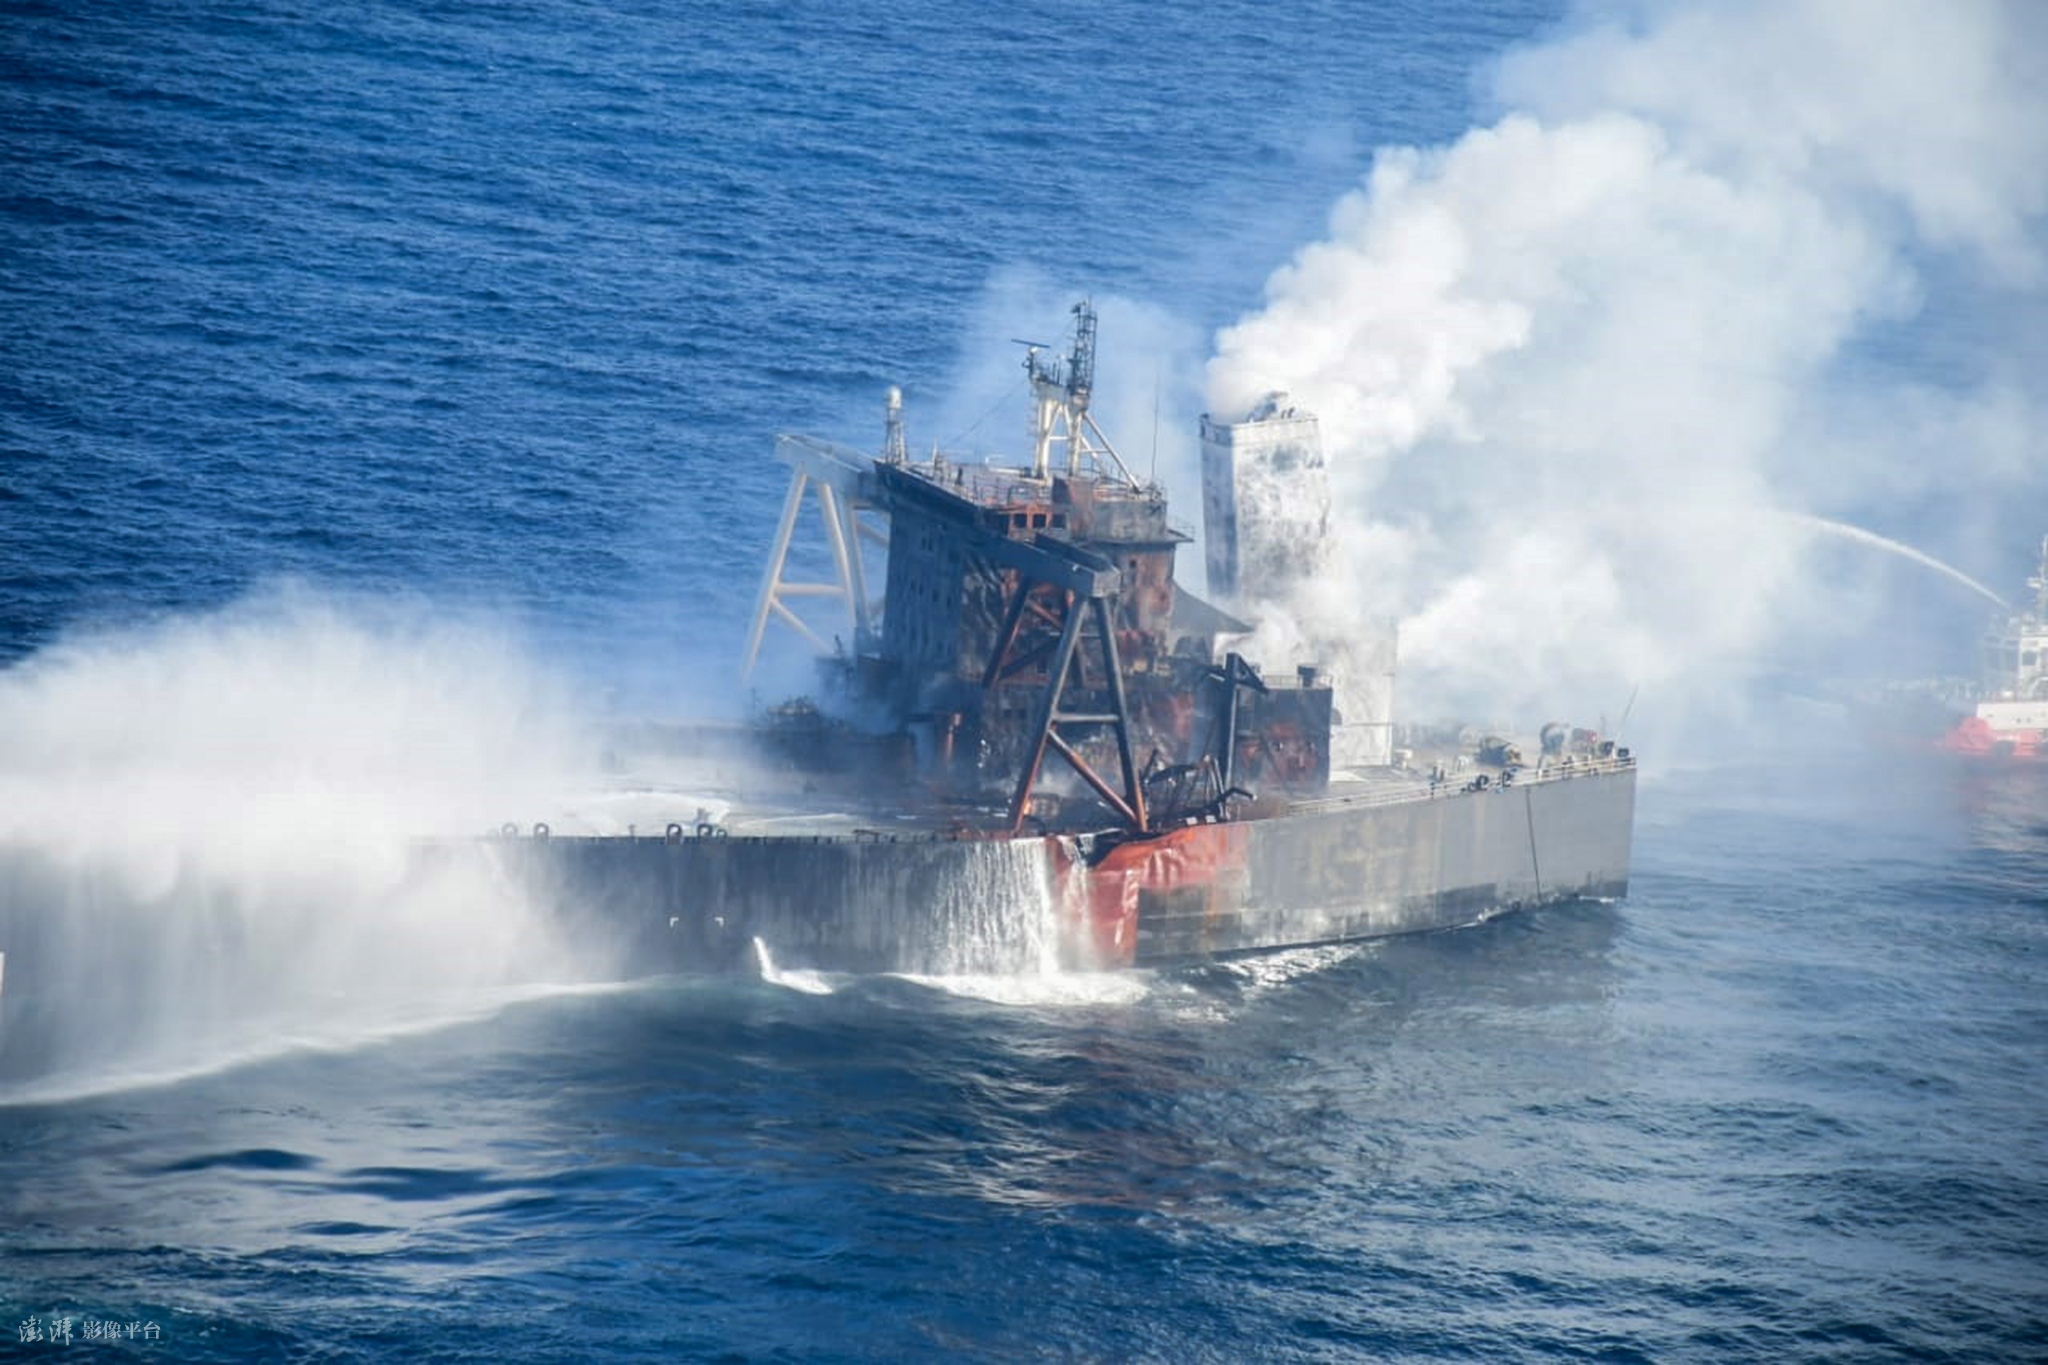 载27万吨原油油轮起火 印度洋又遇原油污染威胁